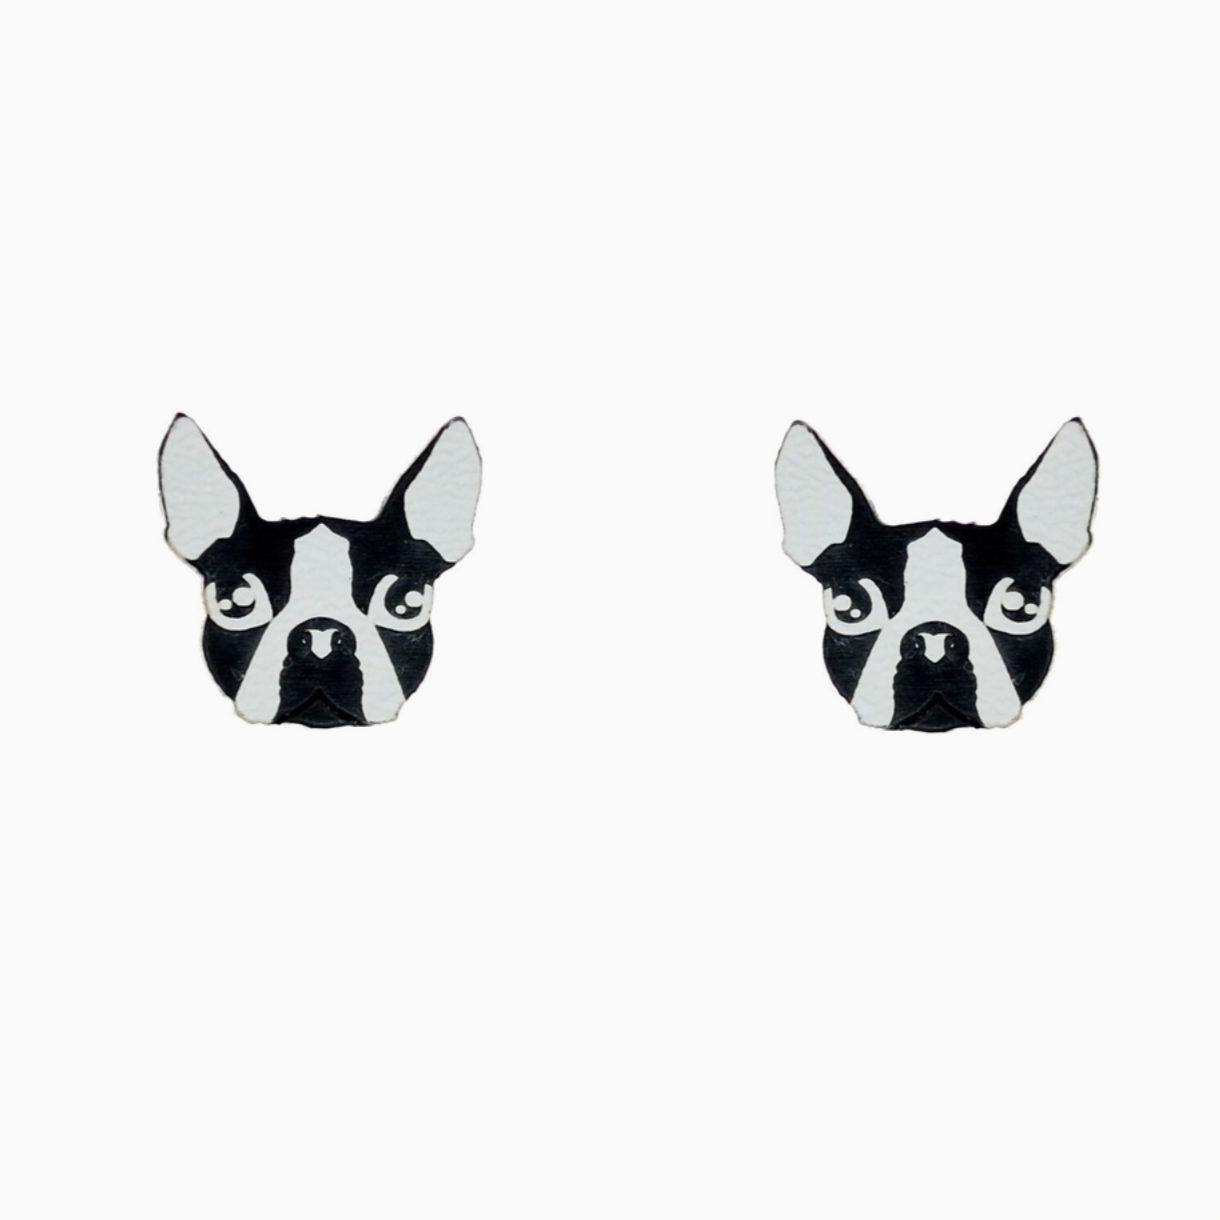 Boston Terrier Earrings - Black and White